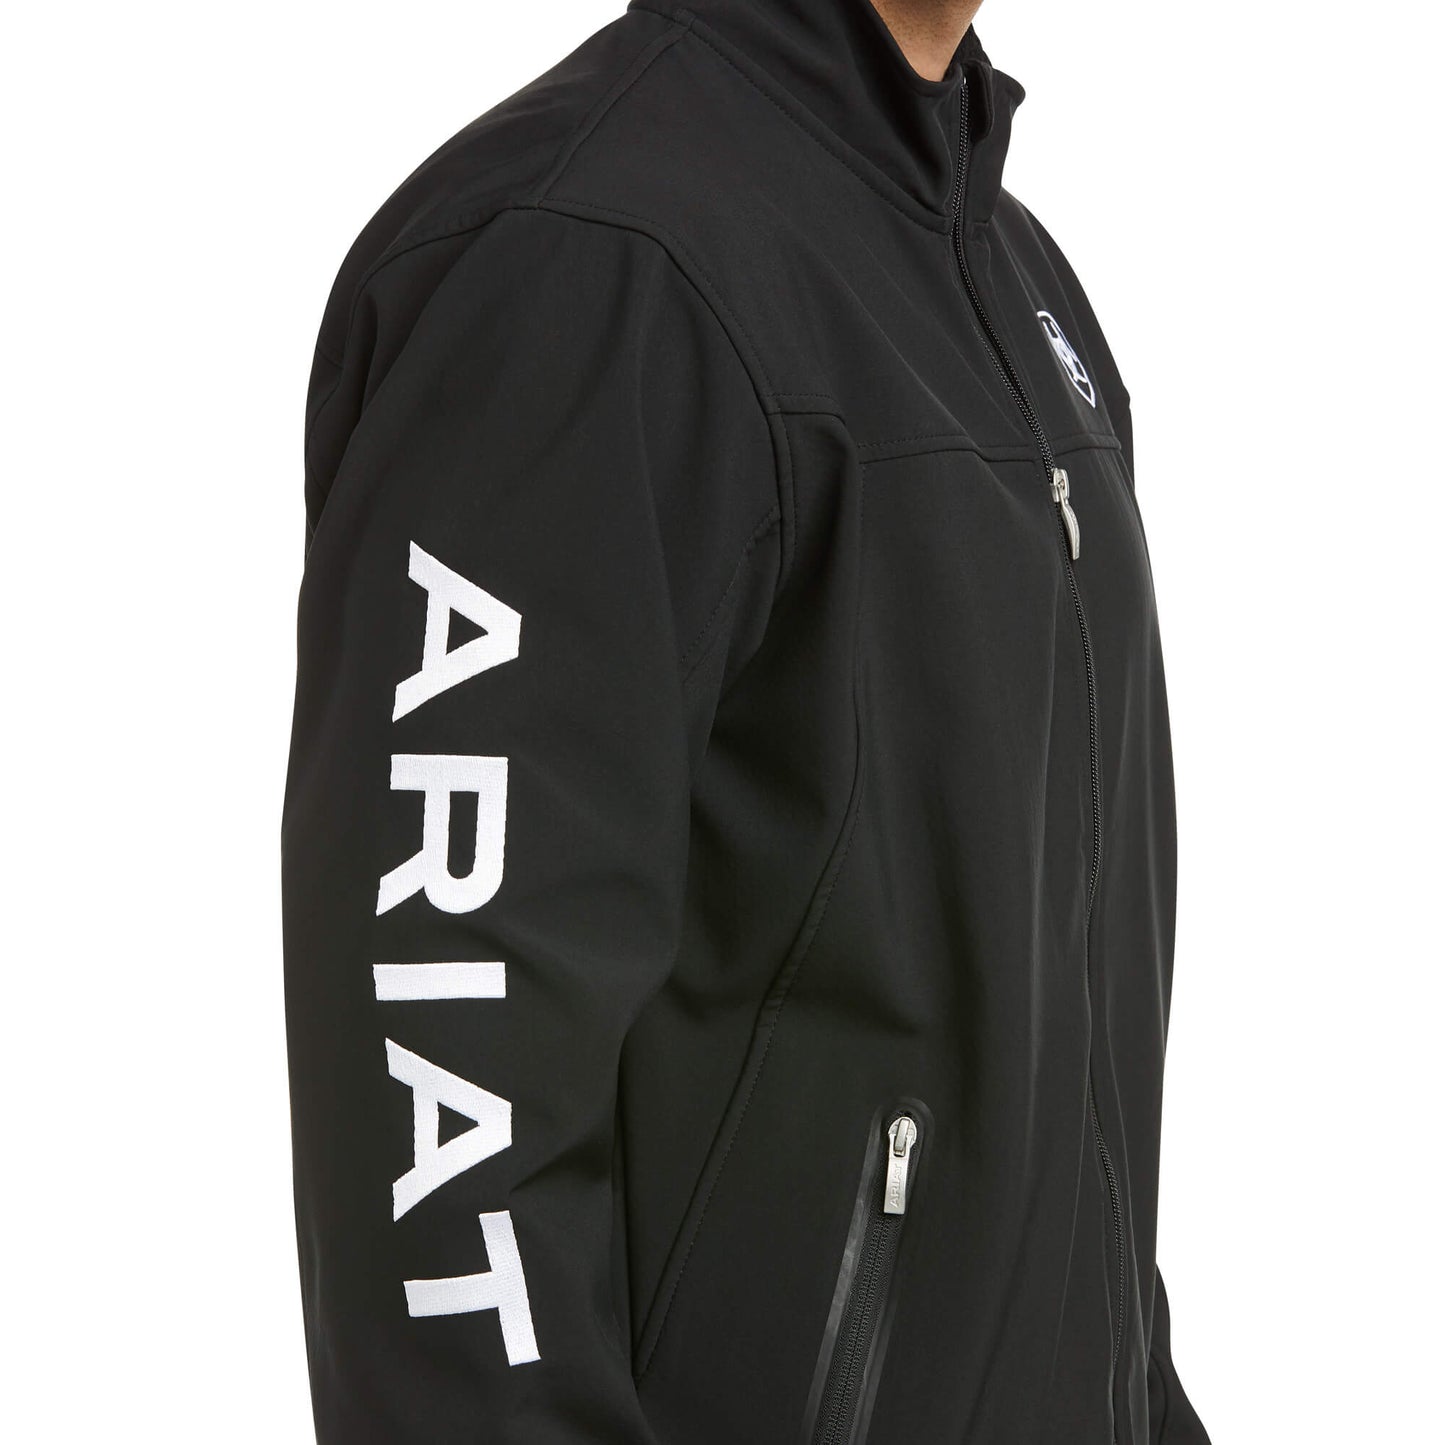 Men's Ariat New Team Softshell Jacket 10019279